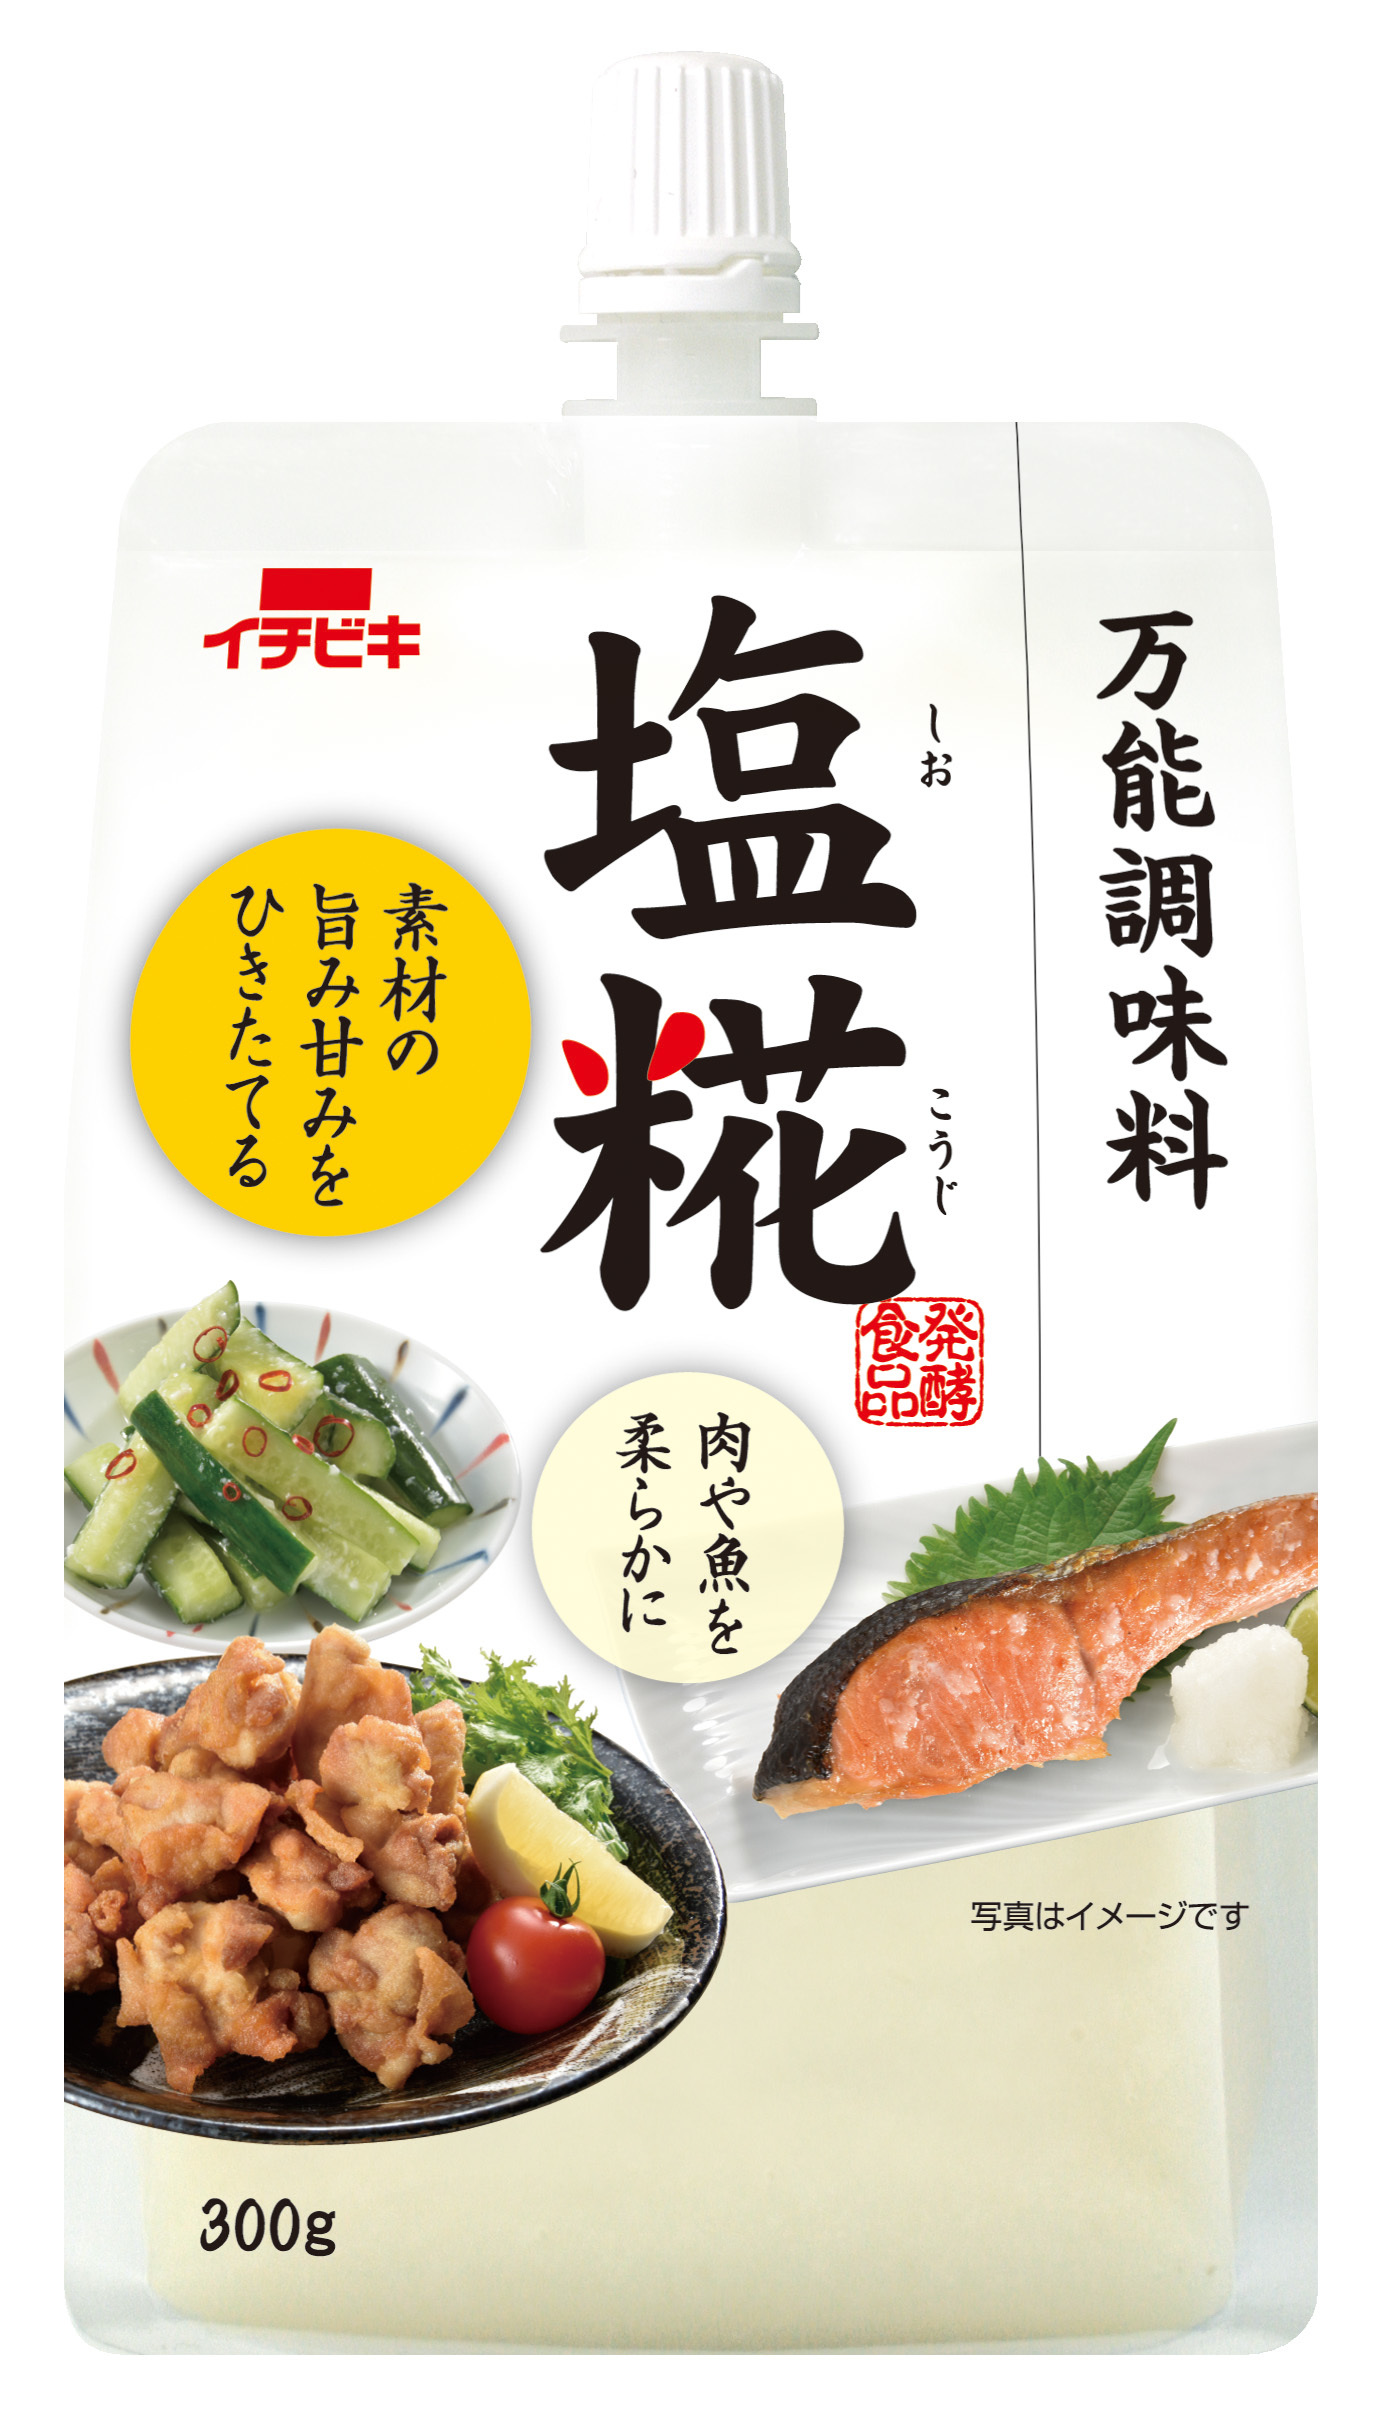 日本のおいしいを伝えたい！塩糀で地元の食材を応援キャンペーン　「地元のギフト」プレゼント企画を1/20～3/20に実施